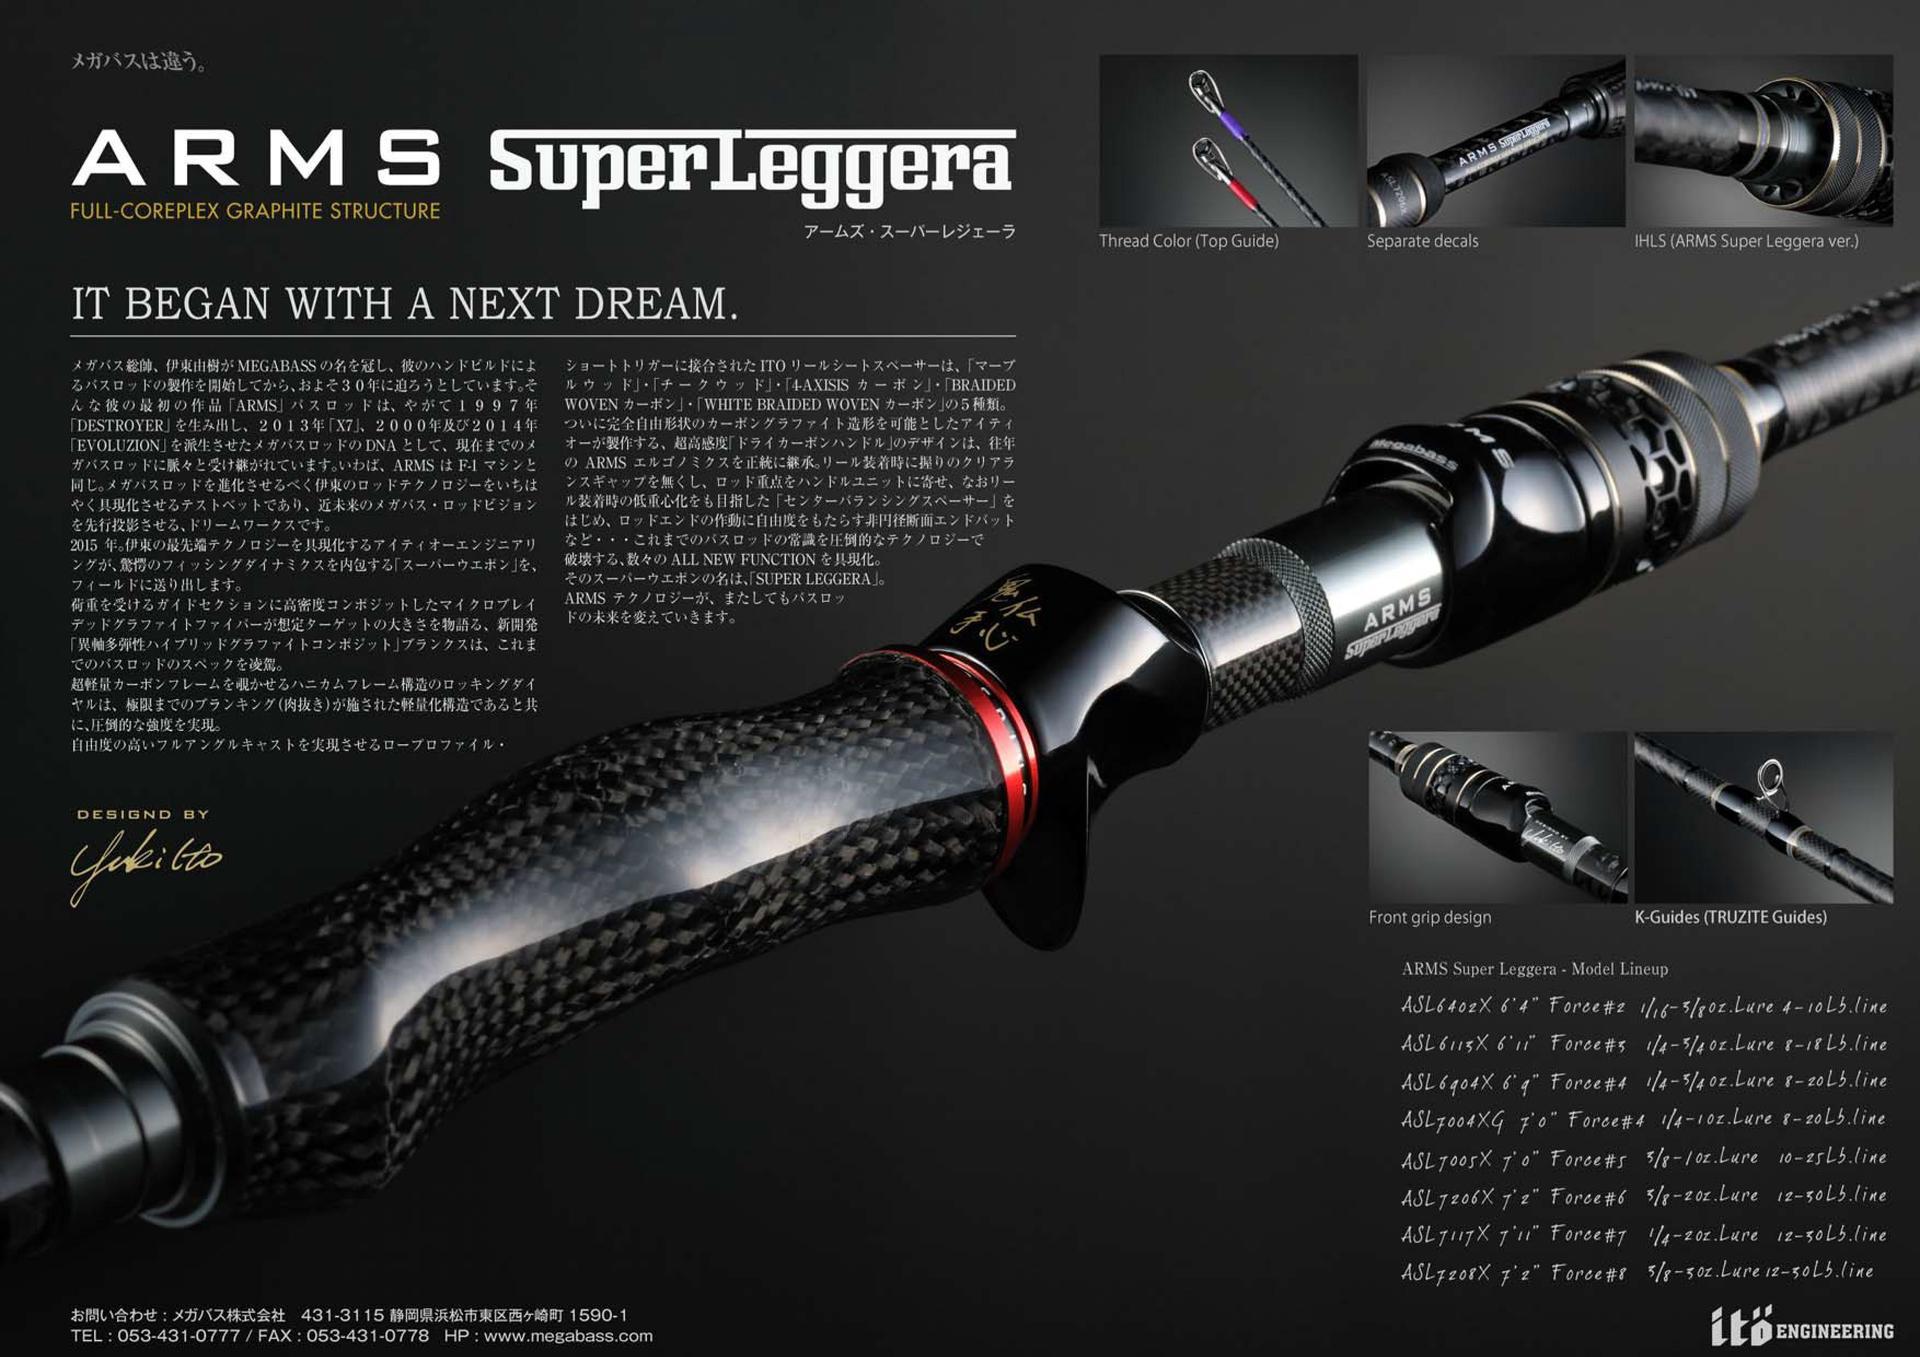 Megabass ARMS SUPER LEGGERA に関する重要なお知らせ: ＩＣＭルアー 